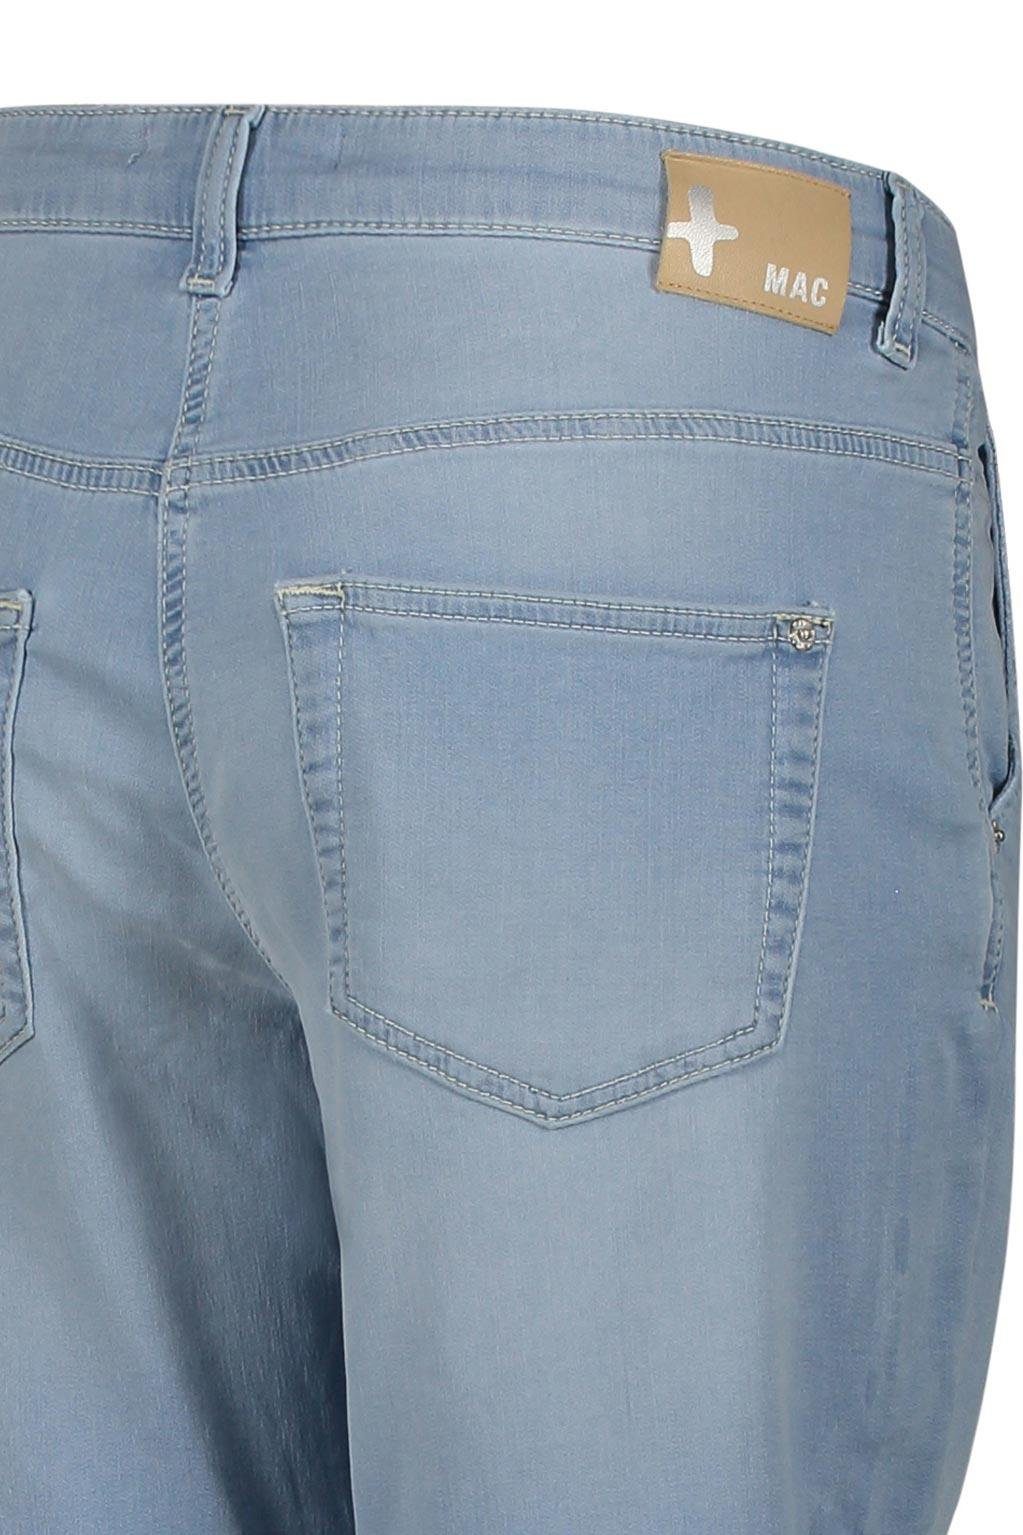 JOG'N summer Stretch-Jeans wash MAC MAC SHORTY 2775-90-0341 beach